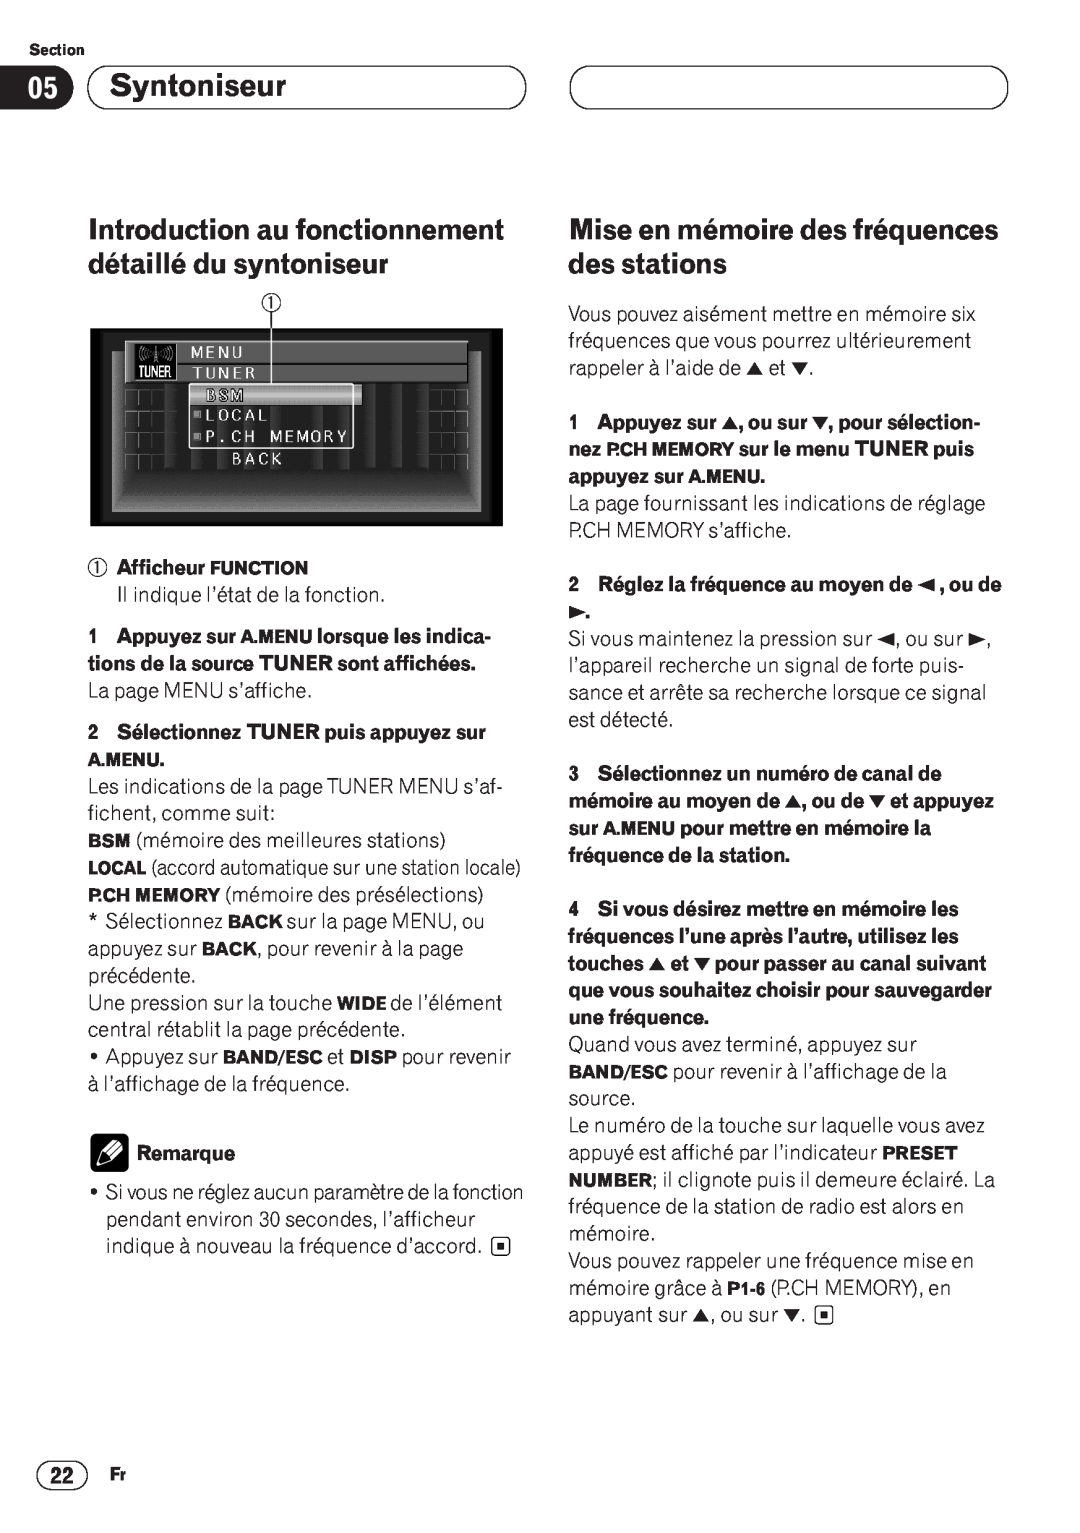 Pioneer AVH-P6400CD Syntoniseur, Mise en mémoire des fréquences des stations, Afficheur FUNCTION, Remarque 